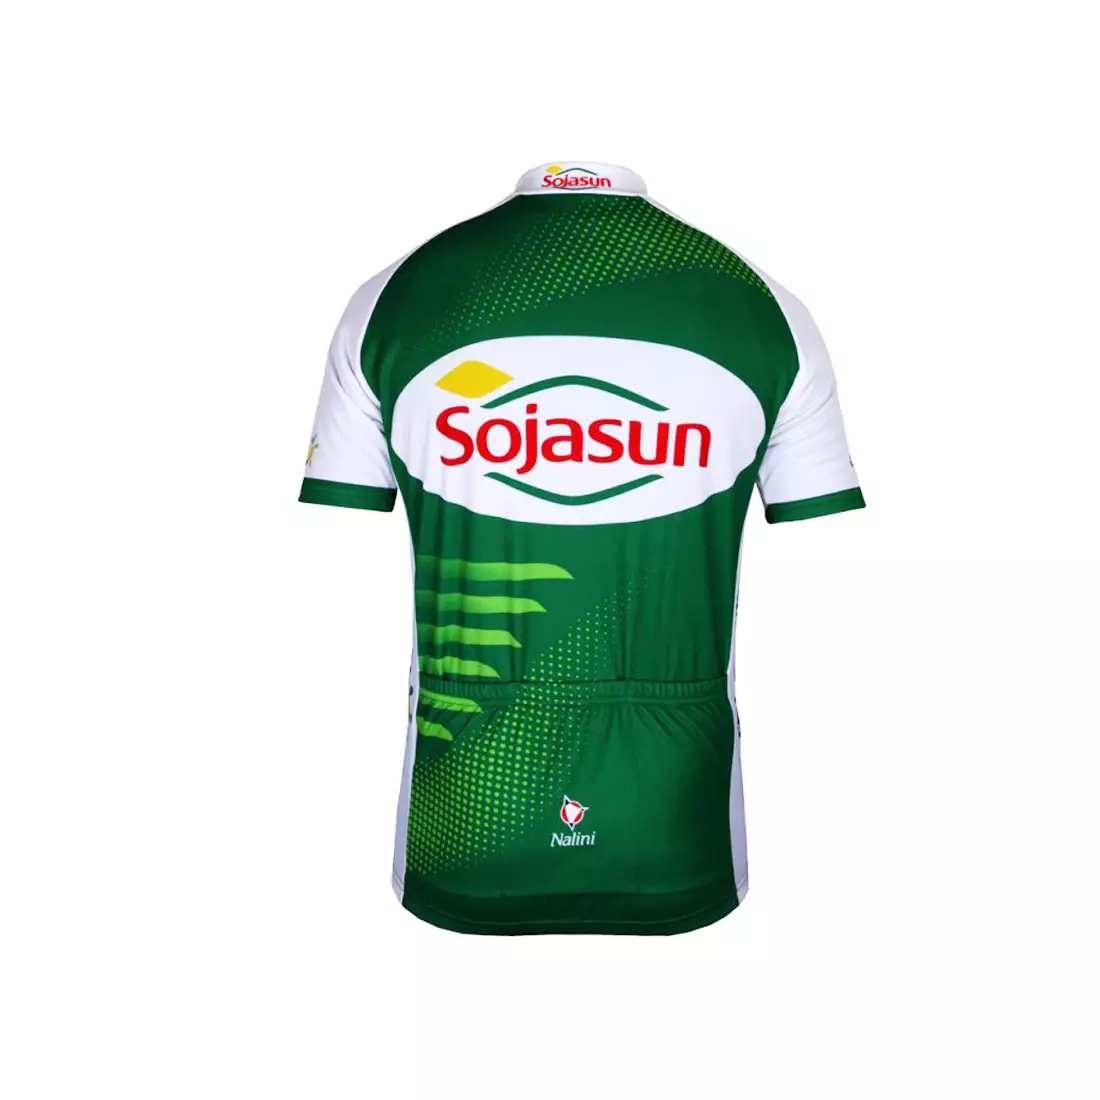 NALINI - TEAM SOJASUN 2013 - cycling jersey